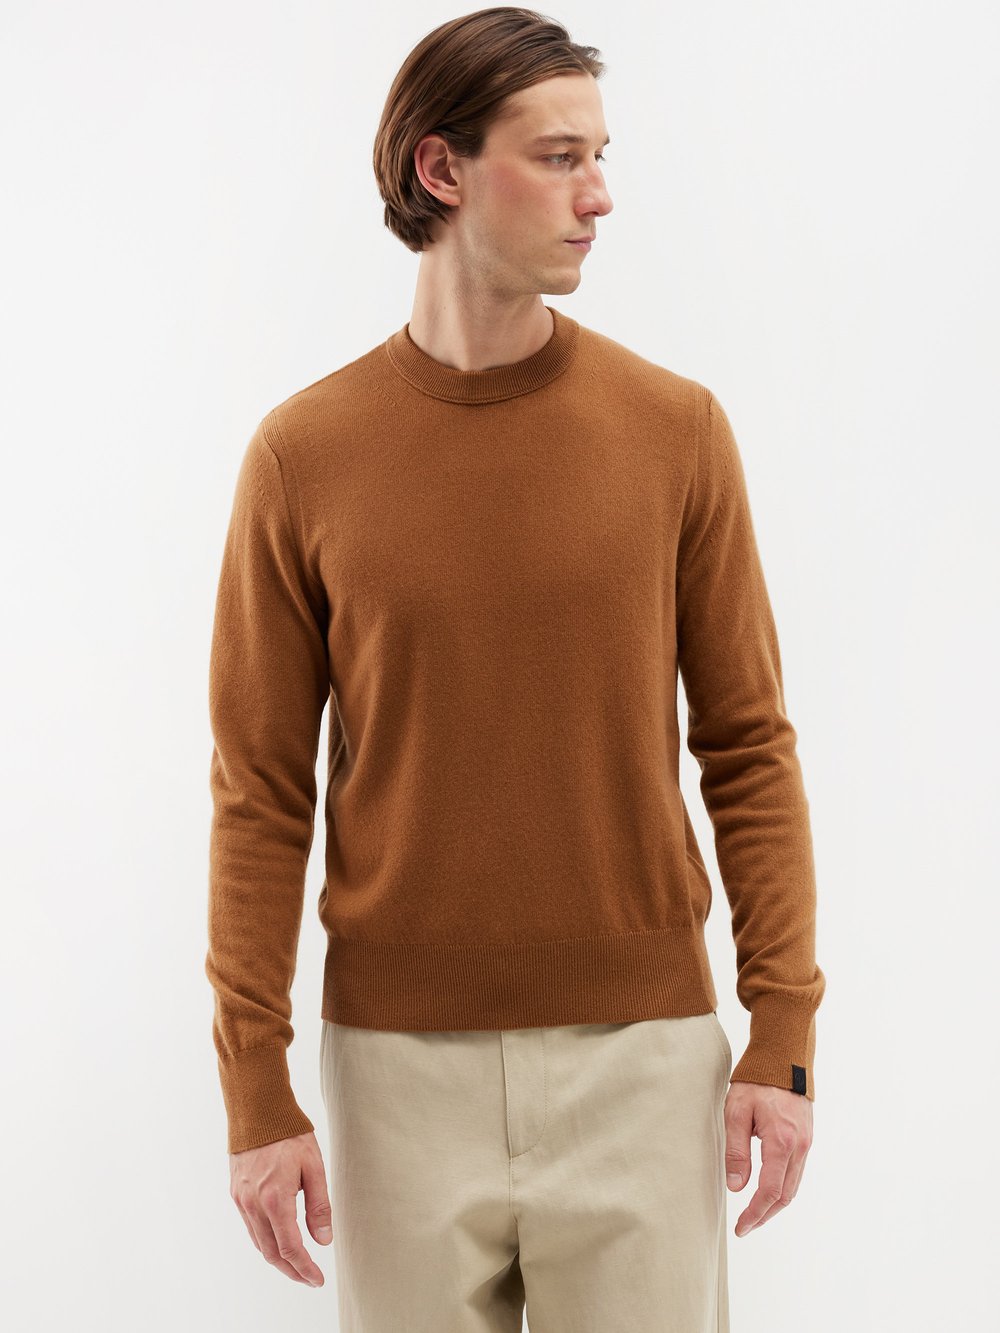 Кашемировый свитер harding Rag & Bone, коричневый